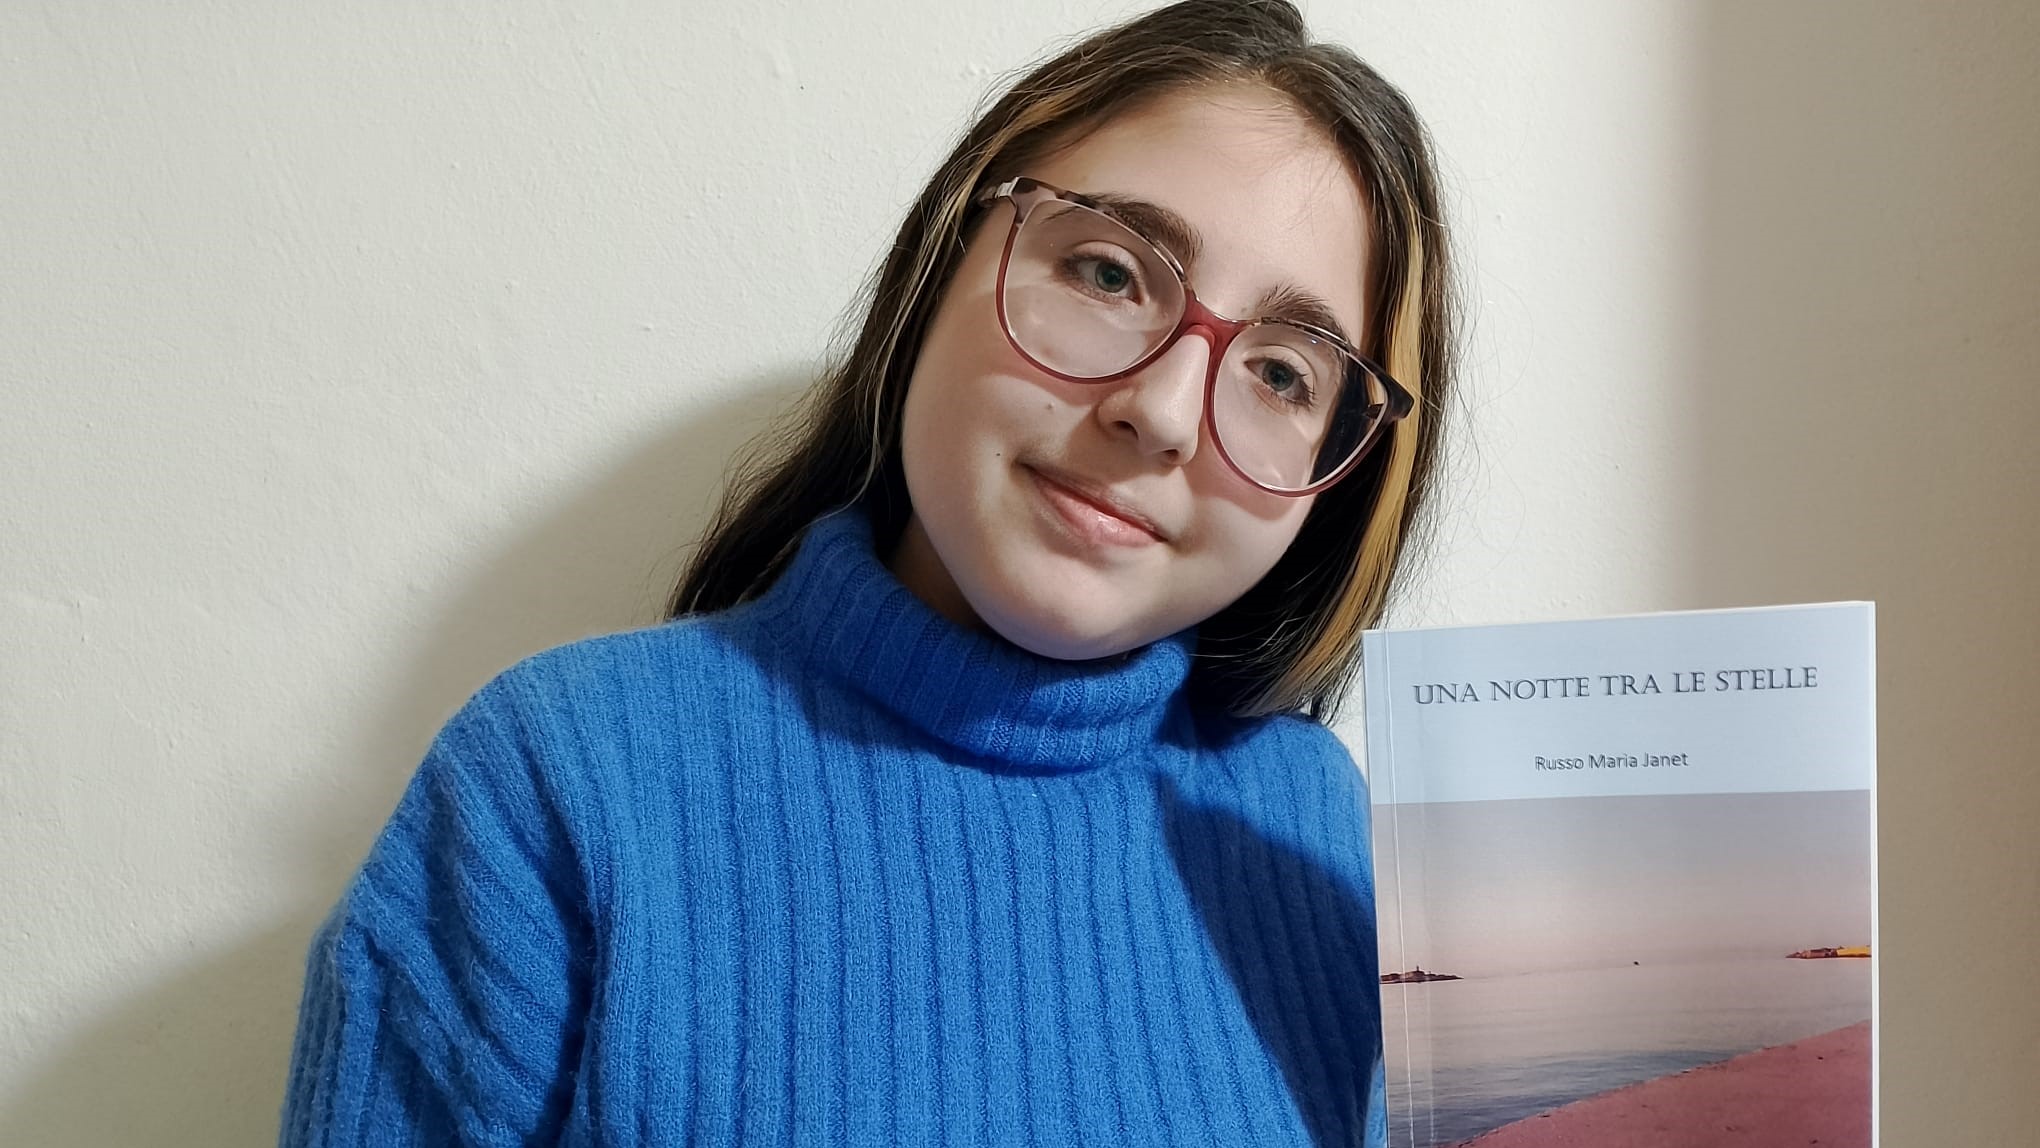 Caltanissetta, martedì la 14enne Maria Janet Russo presenta il suo primo romanzo